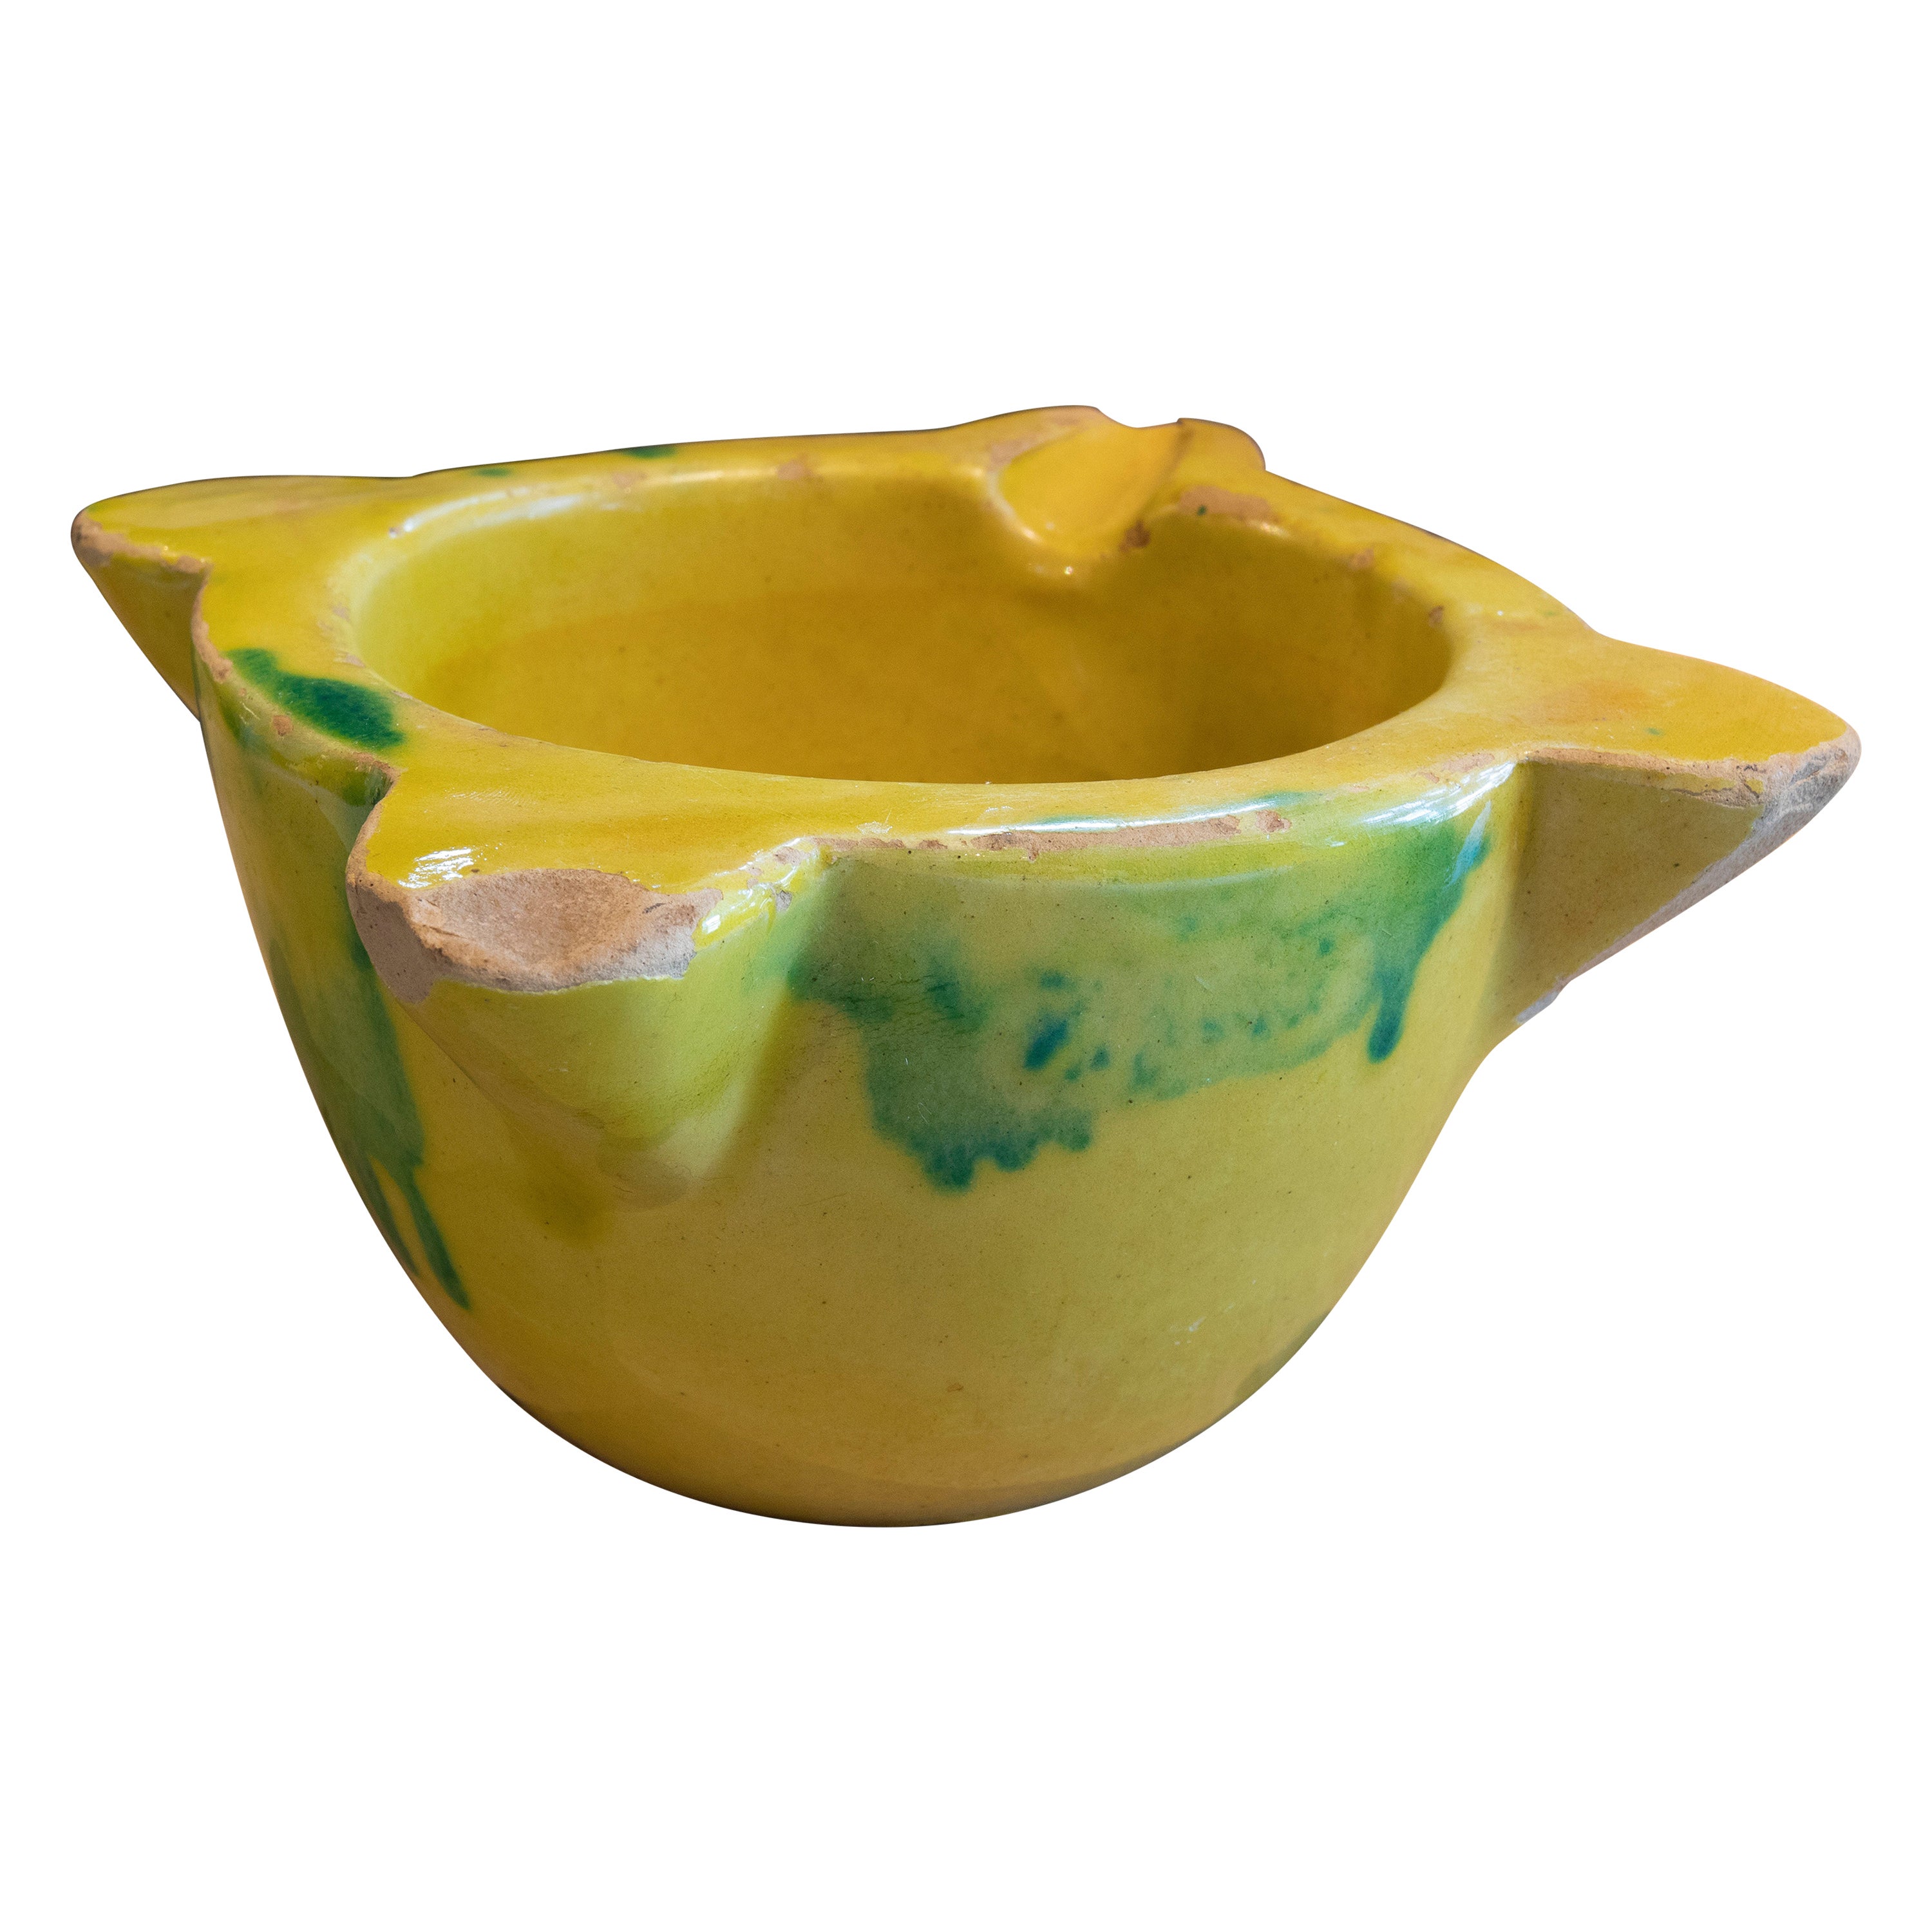 Spanischer glasierter Keramik-Mortar in gelber und grüner Farbe